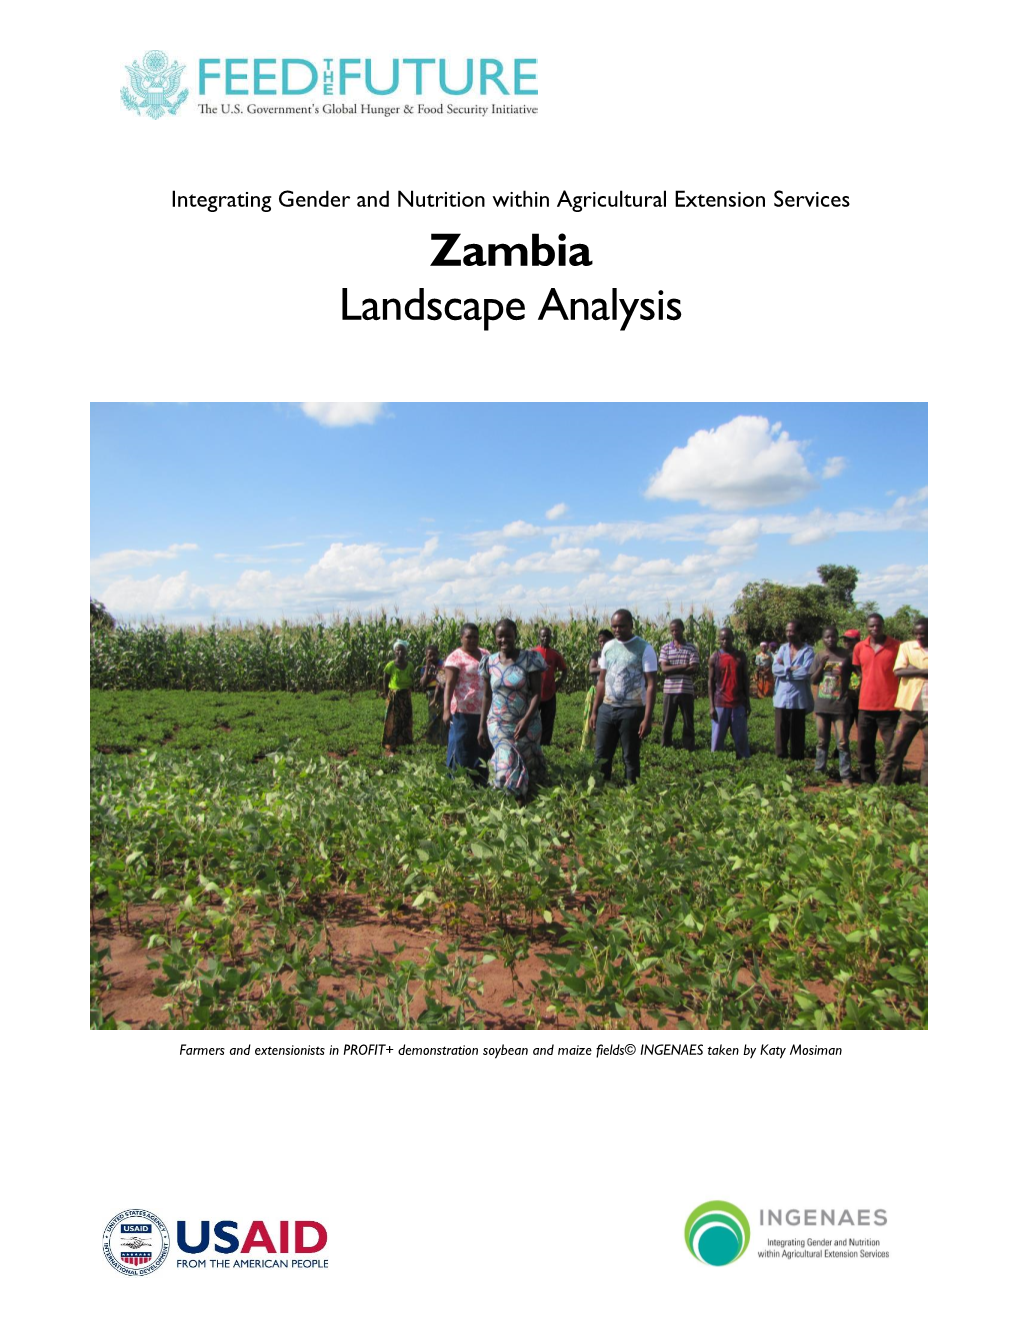 Zambia Landscape Analysis